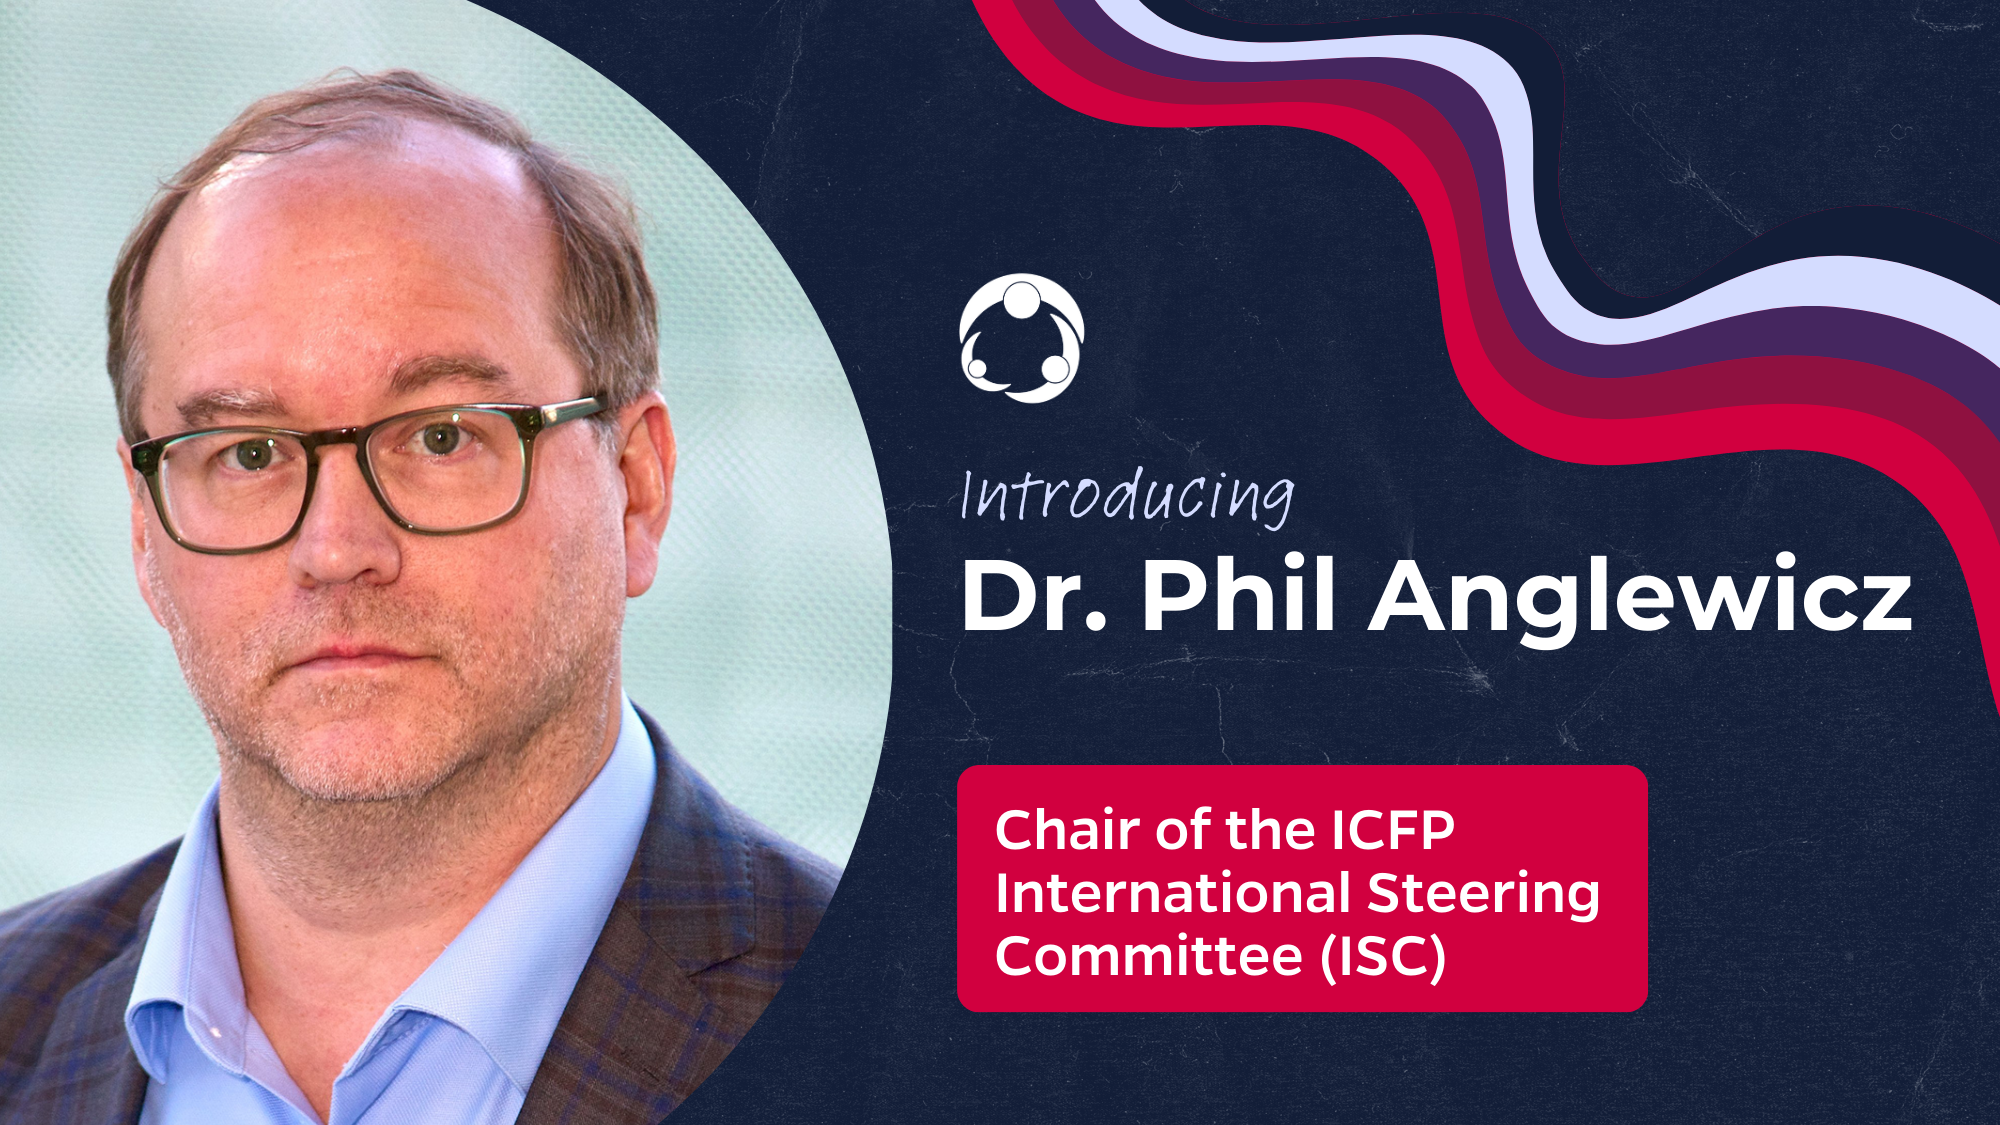 Bienvenida al nuevo Presidente del Comité Directivo Internacional de la ICFP, Dr. Philip Anglewicz